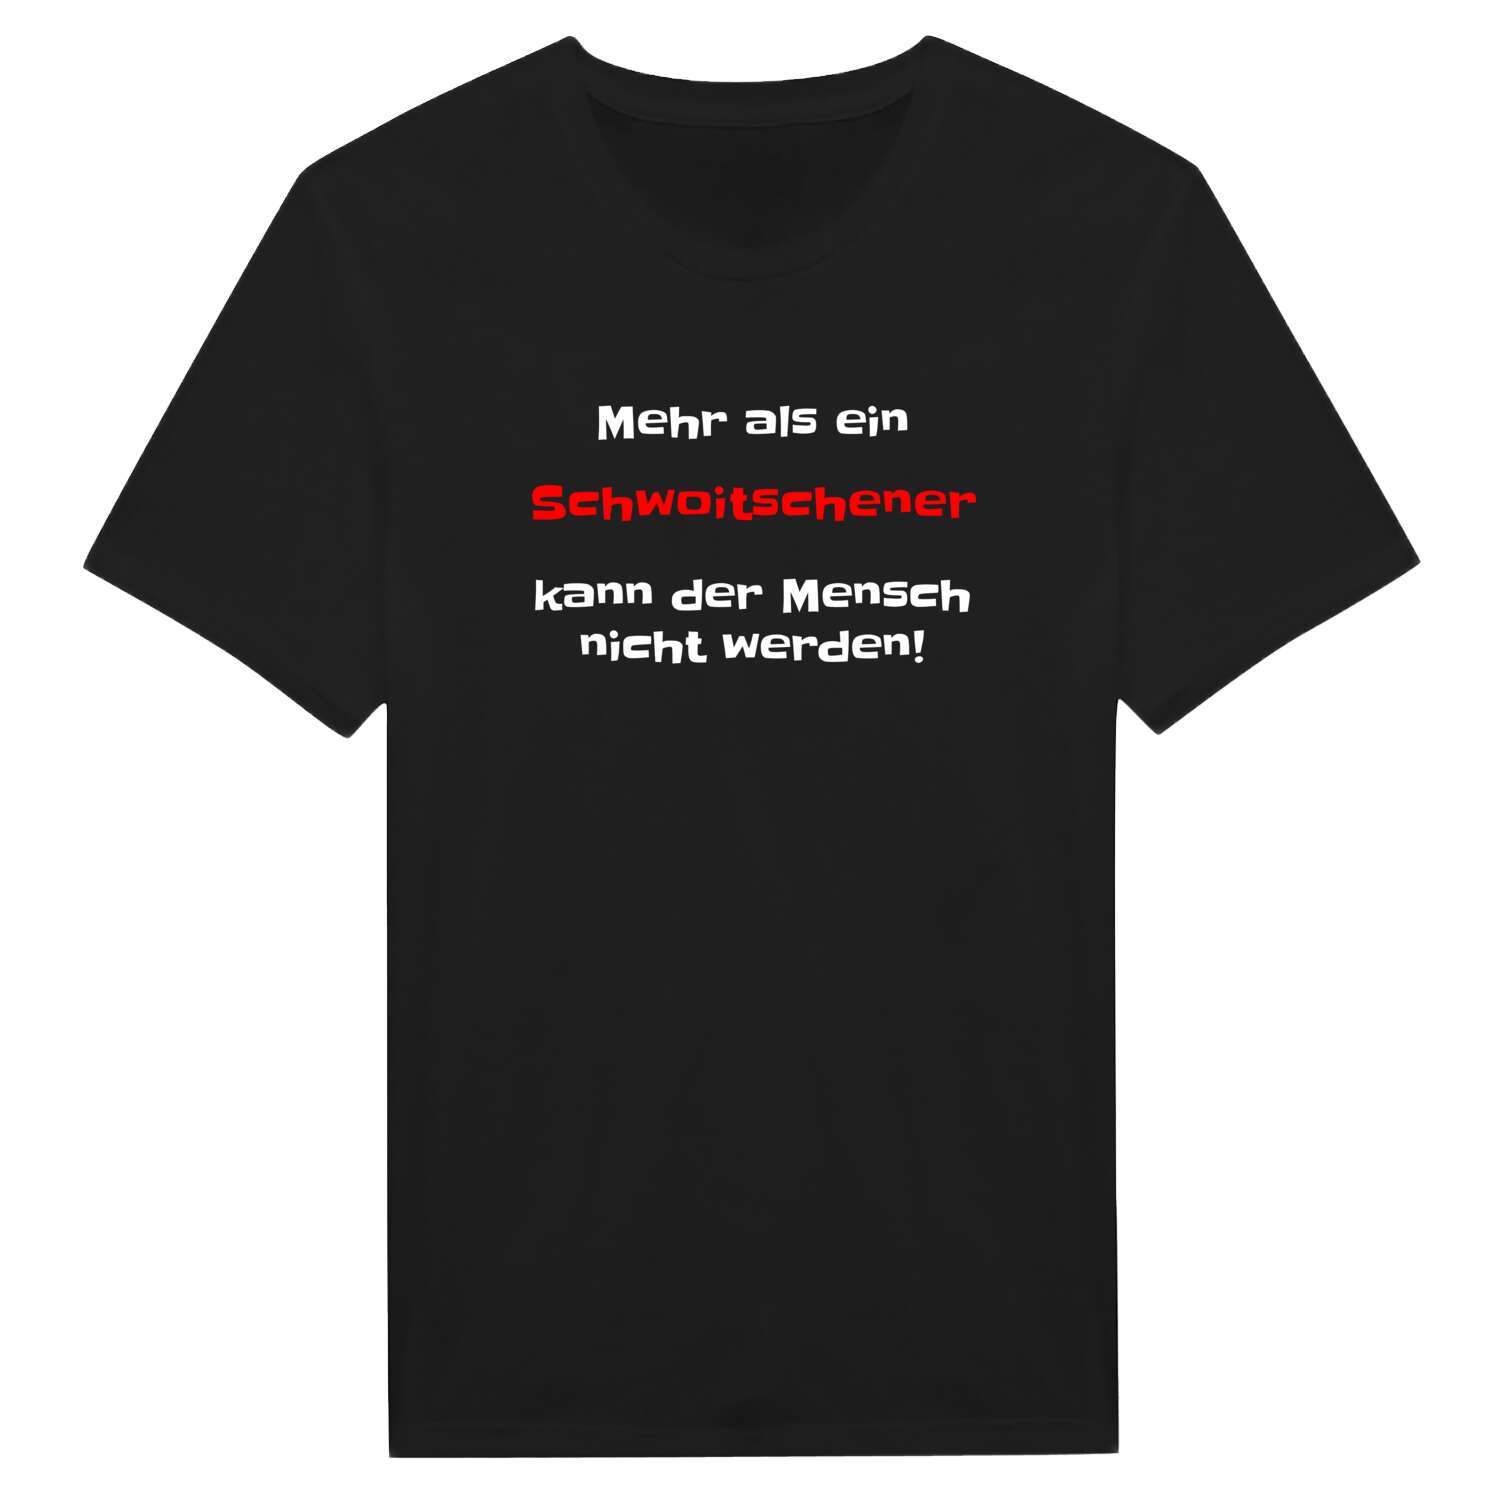 Schwoitsch T-Shirt »Mehr als ein«